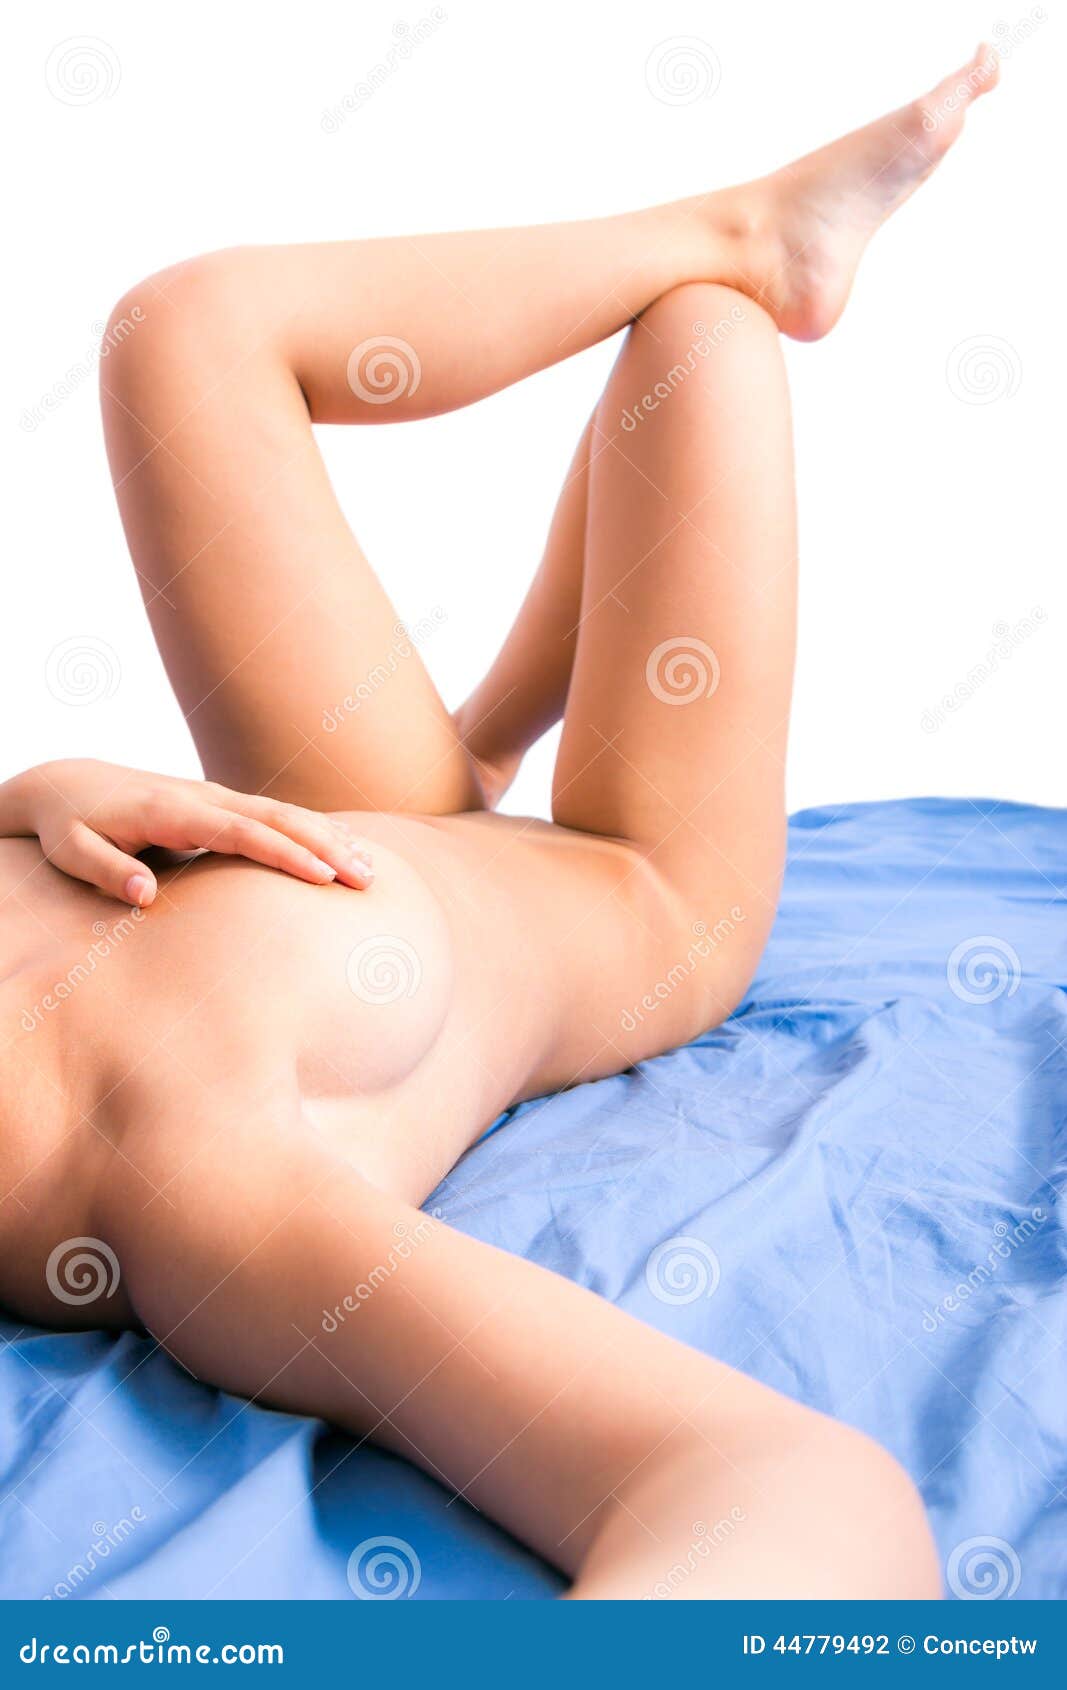 Naked Girl On Bed Selfie